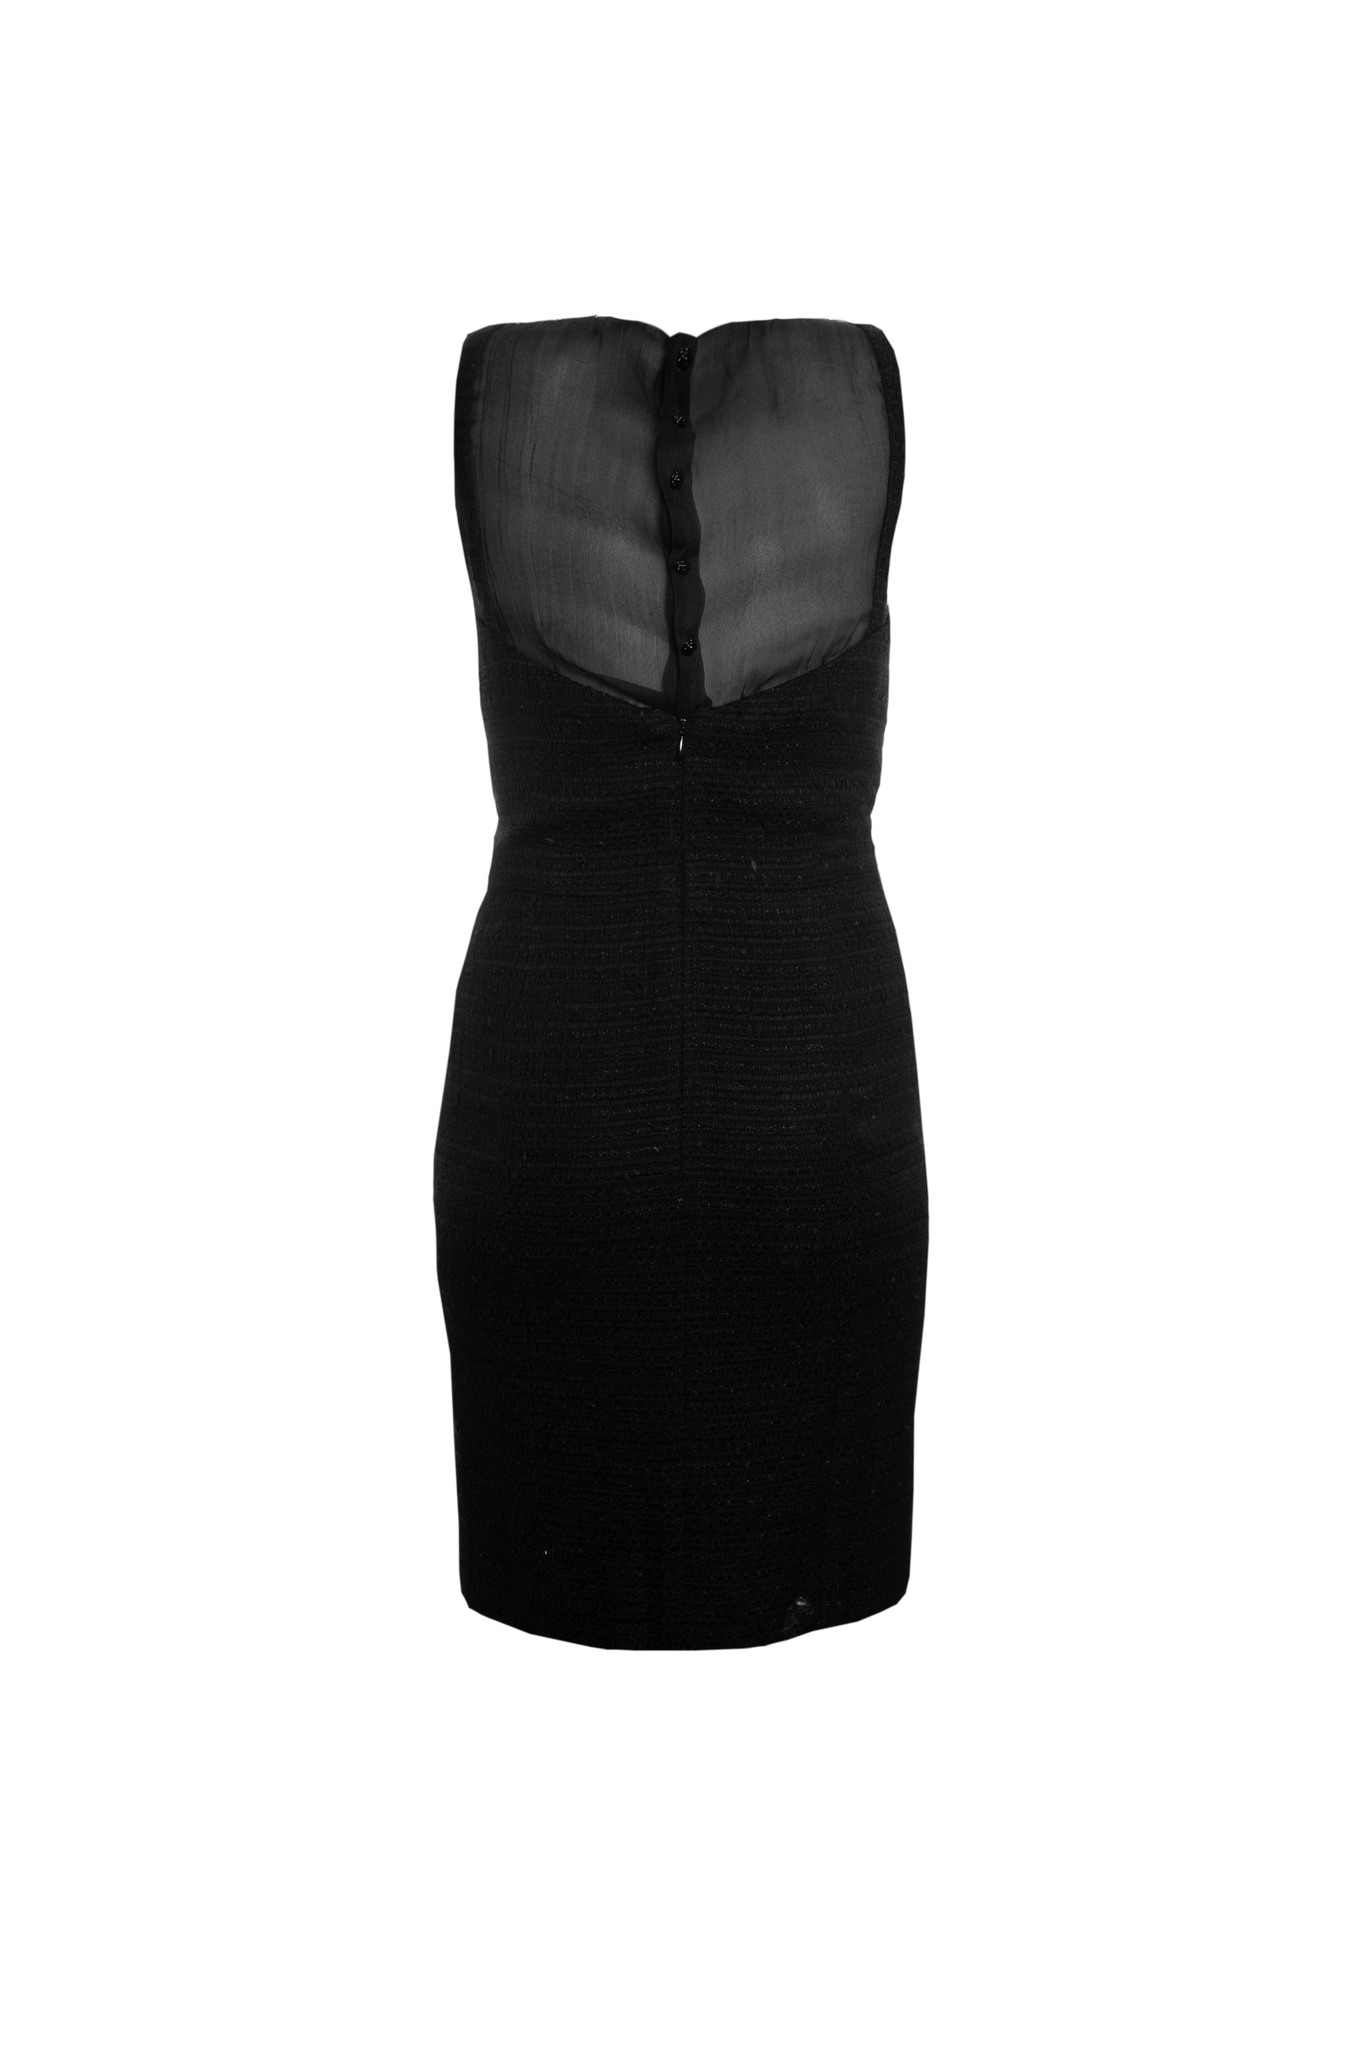 Элегантное платье из твида черного цвета от Chanel, 34 размер.